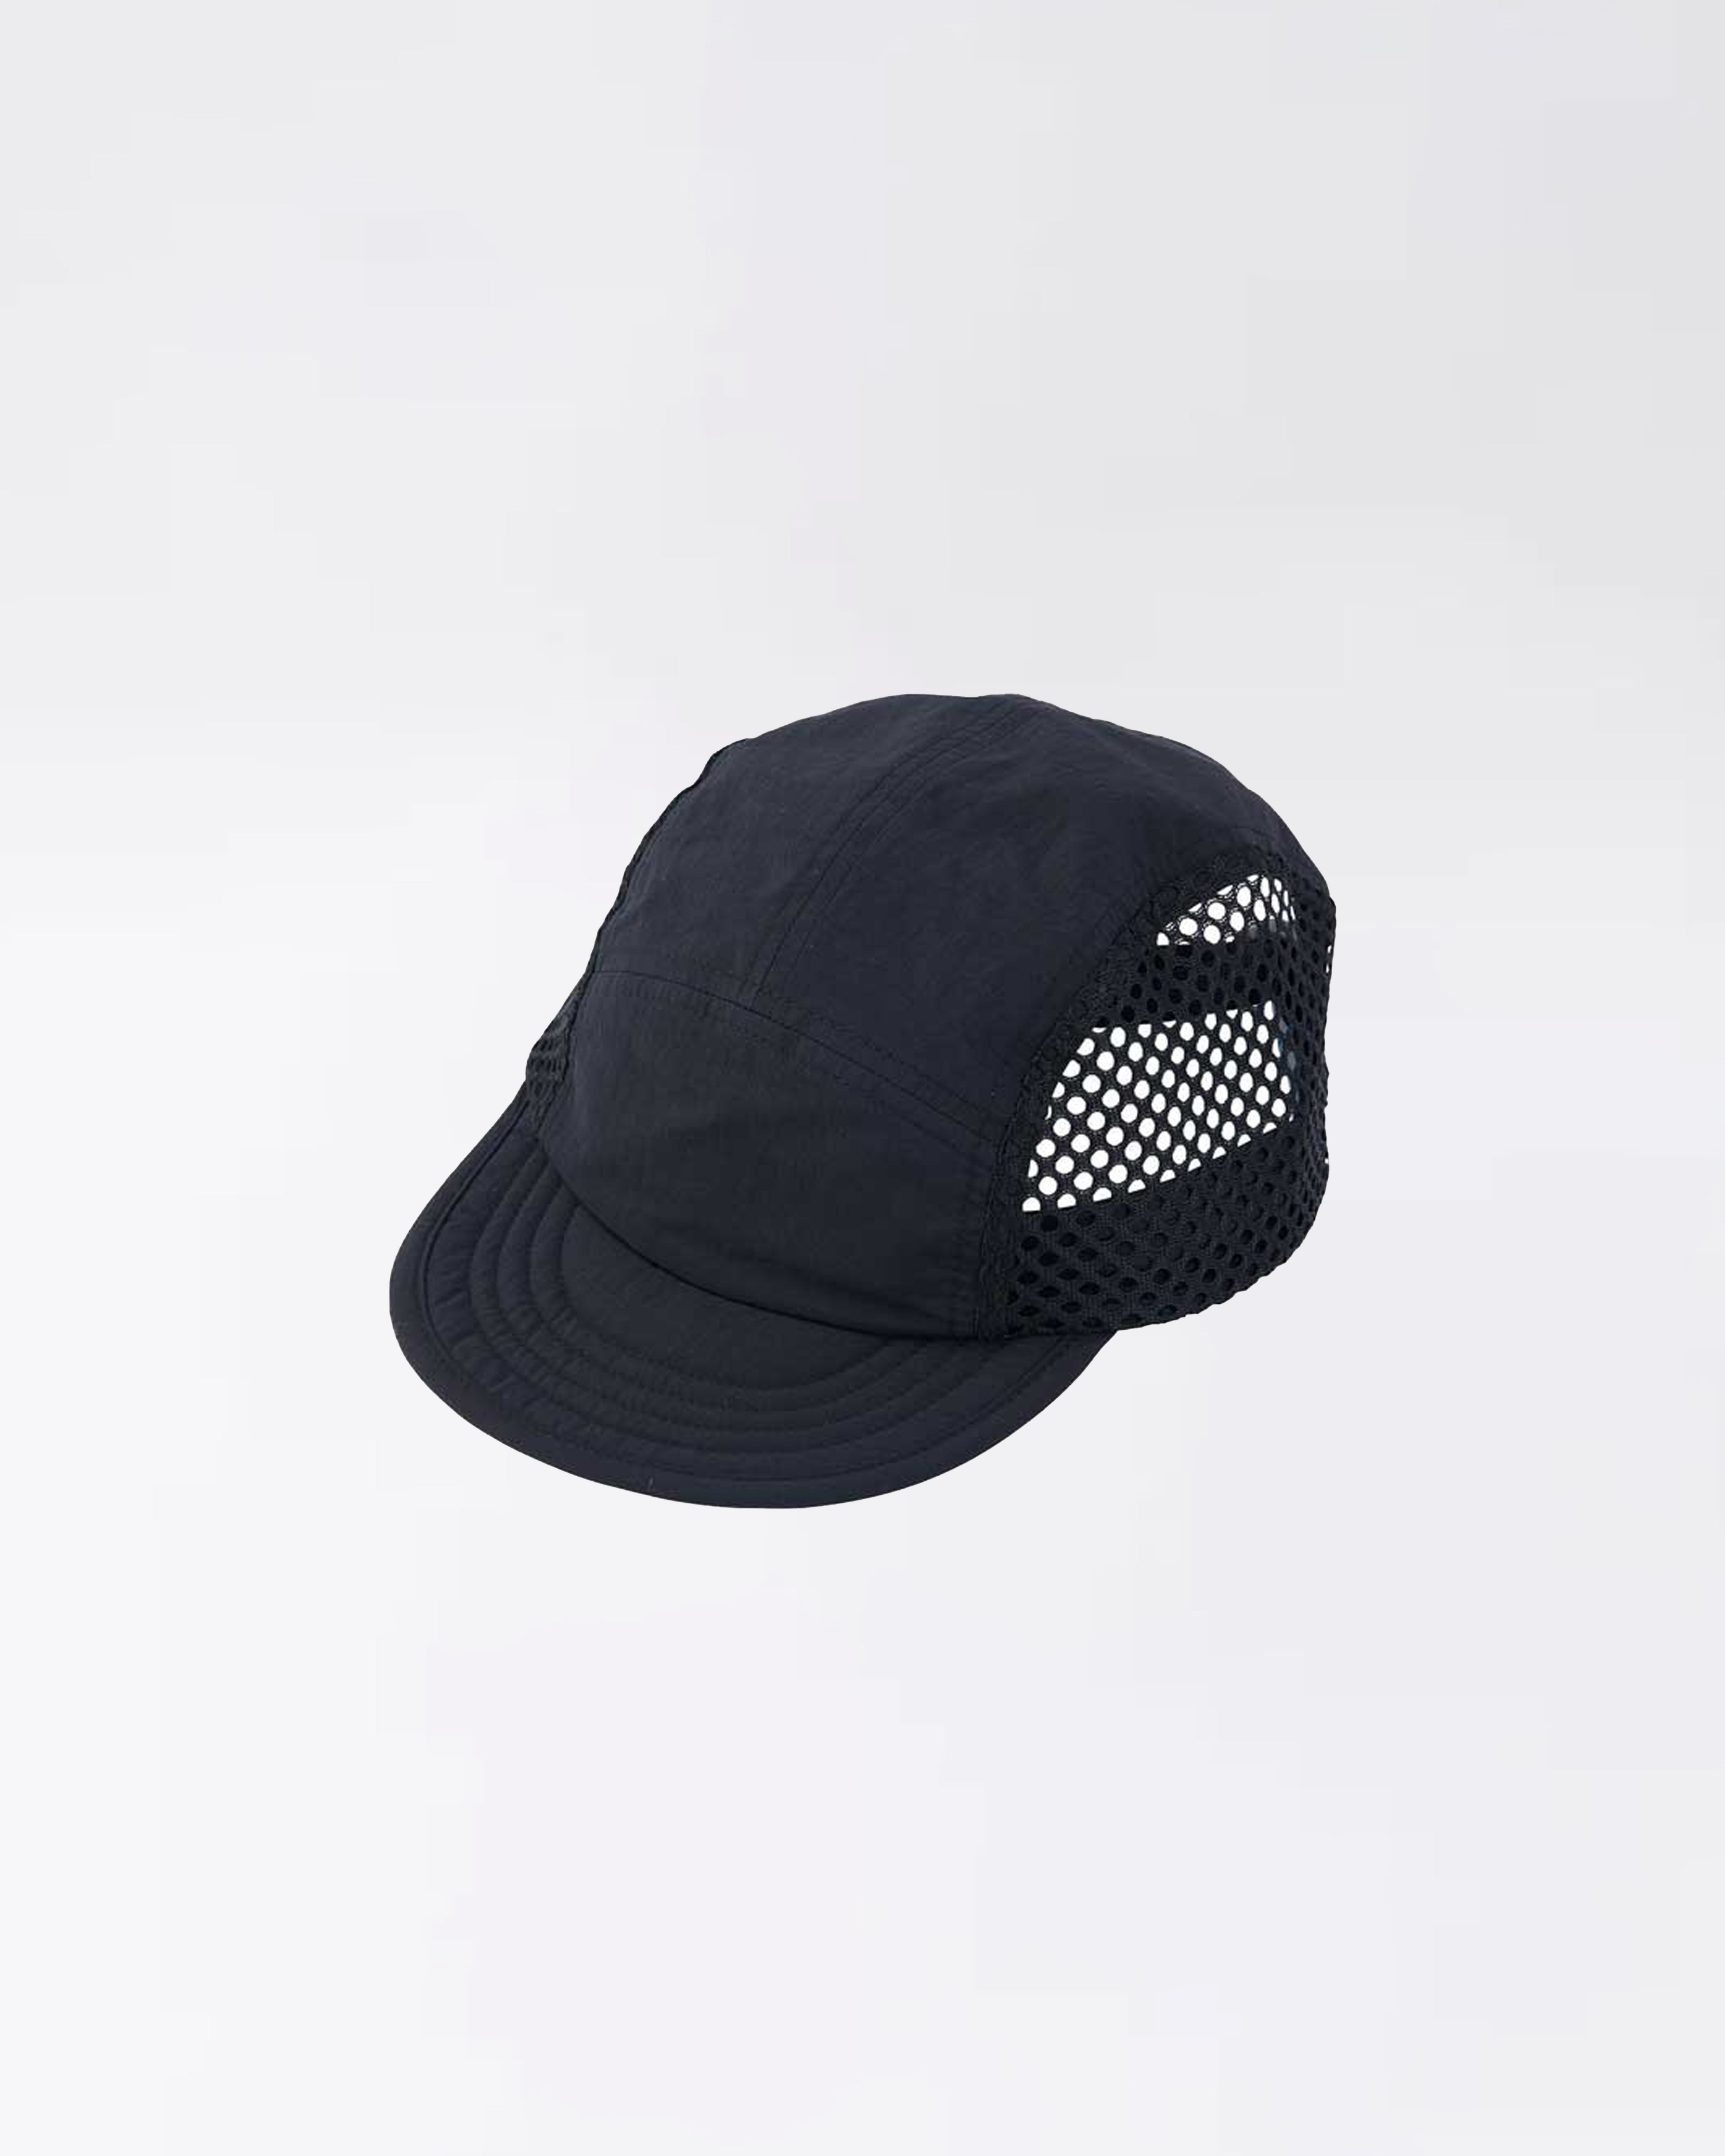 MESH CAP BLACK